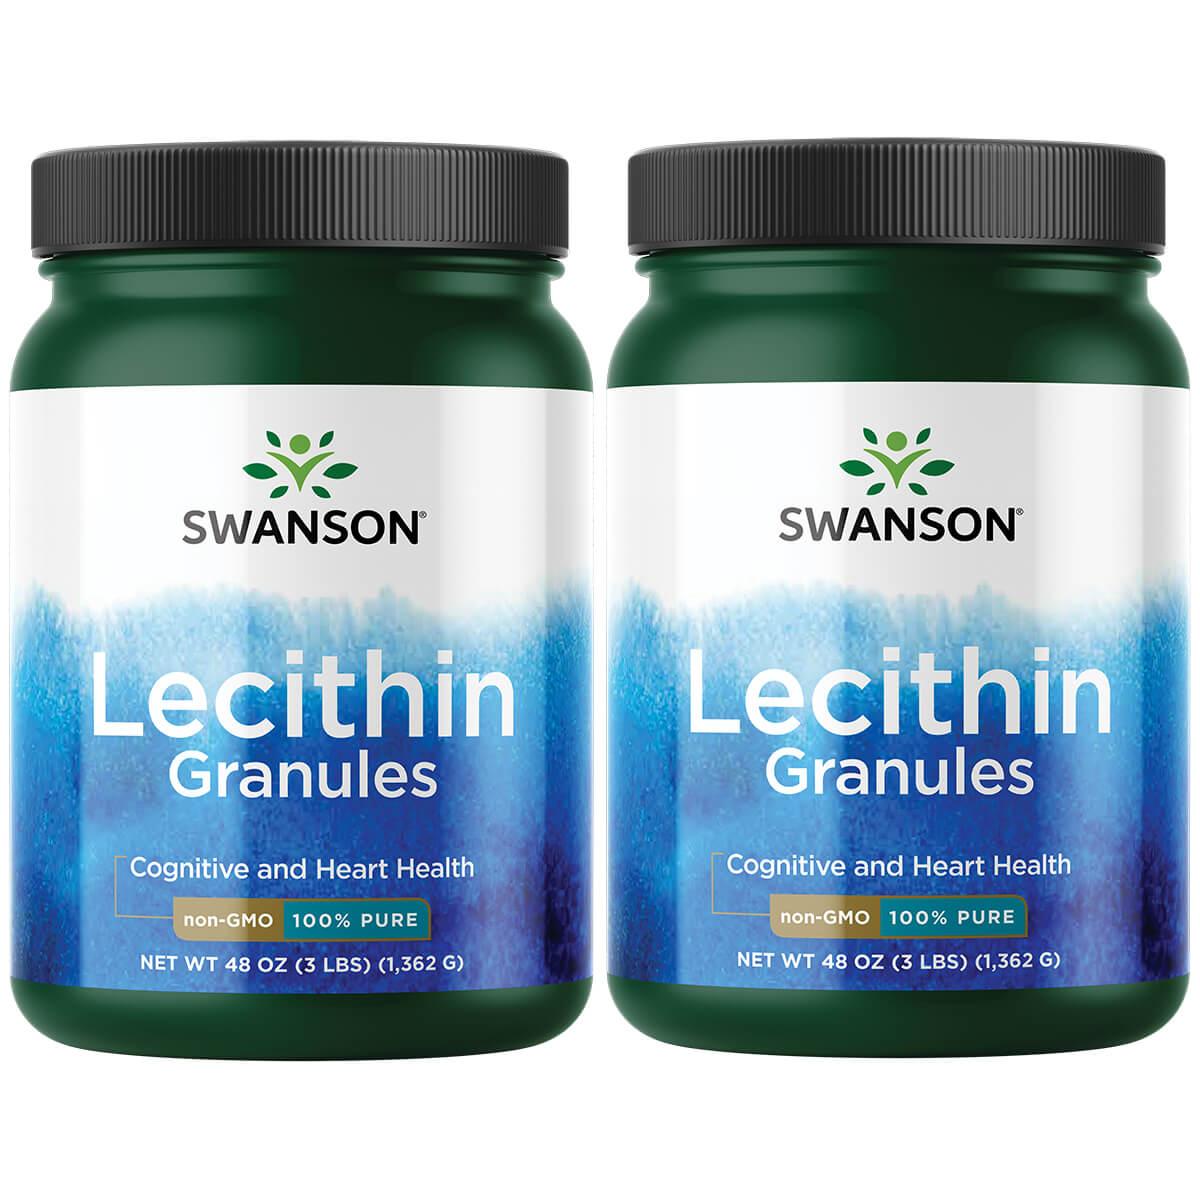 Swanson Premium Lecithin Granules - Non-Gmo 100% Pure 2 Pack Supplement Vitamin 48 oz Granules